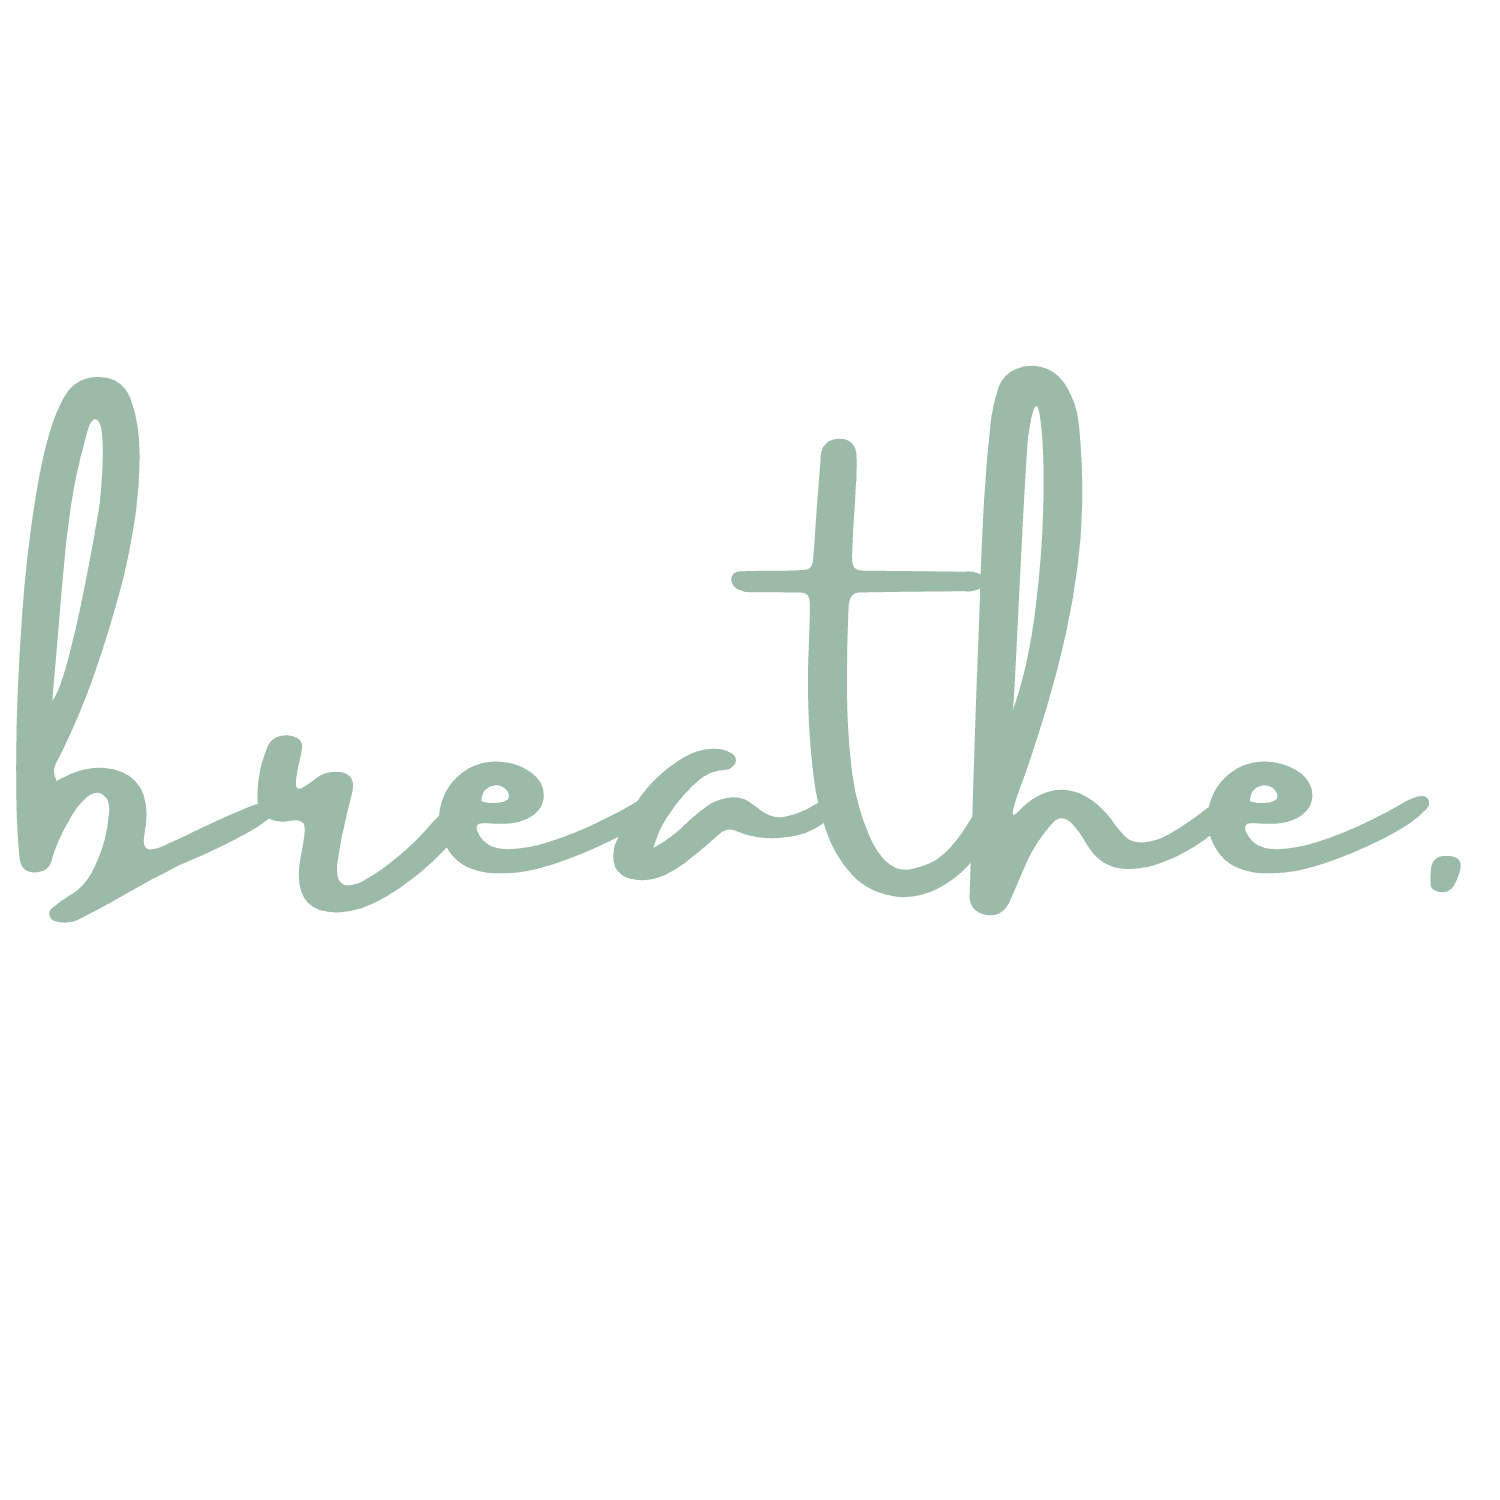 breathe_logo_1_52de6ea932